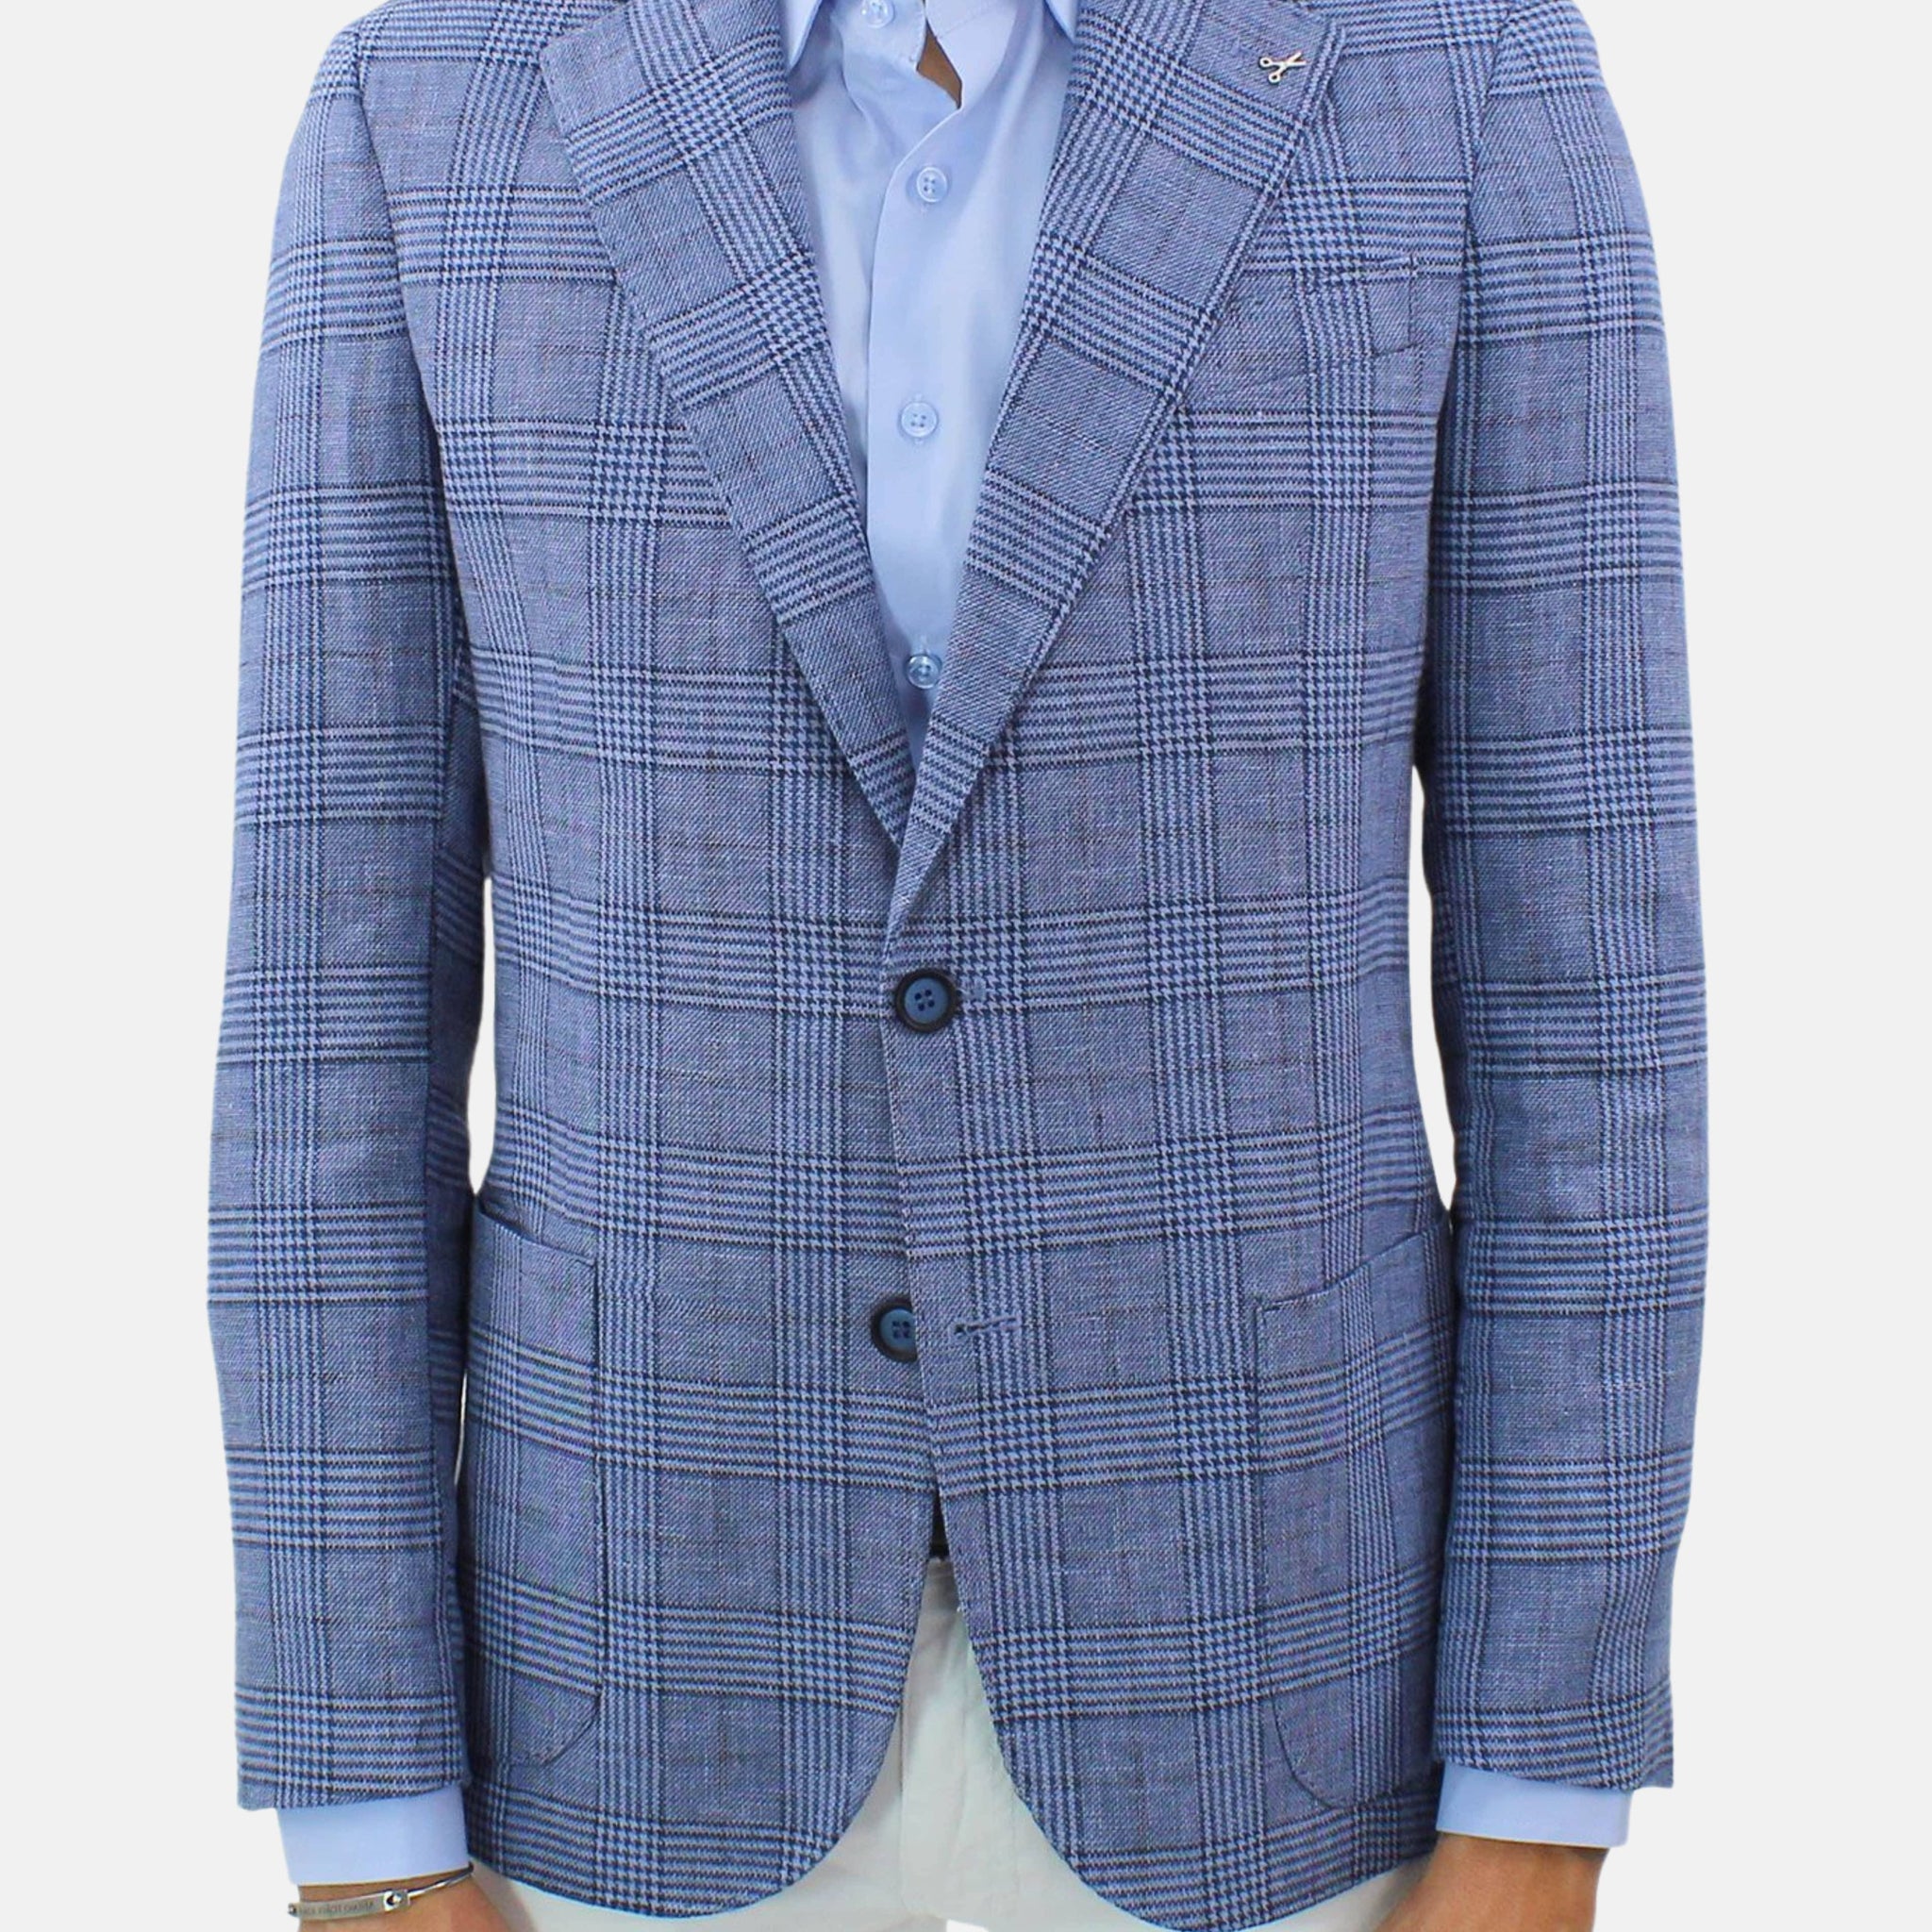 Light blue linen blend jacket